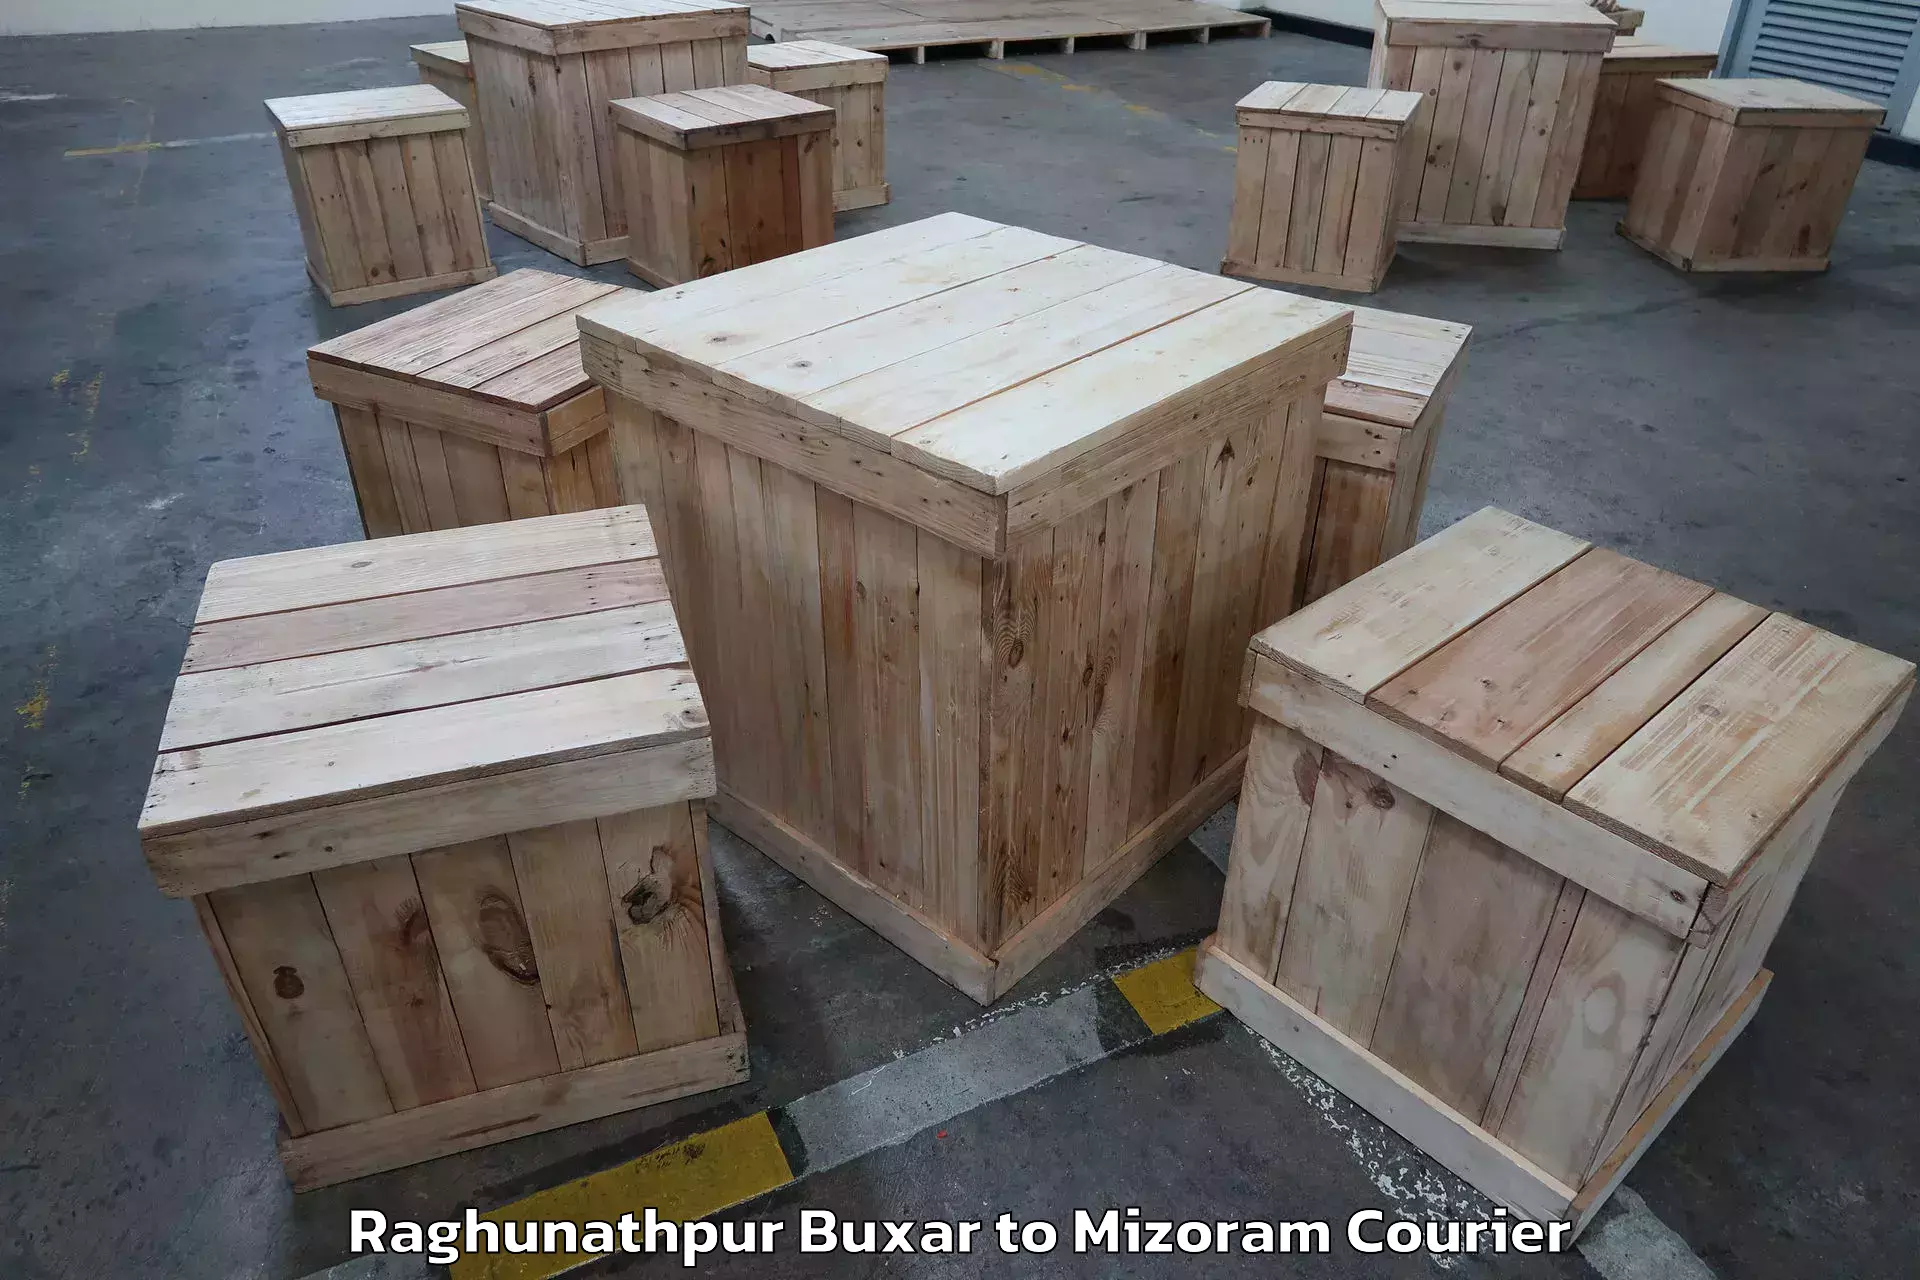 Furniture transport specialists Raghunathpur Buxar to NIT Aizawl